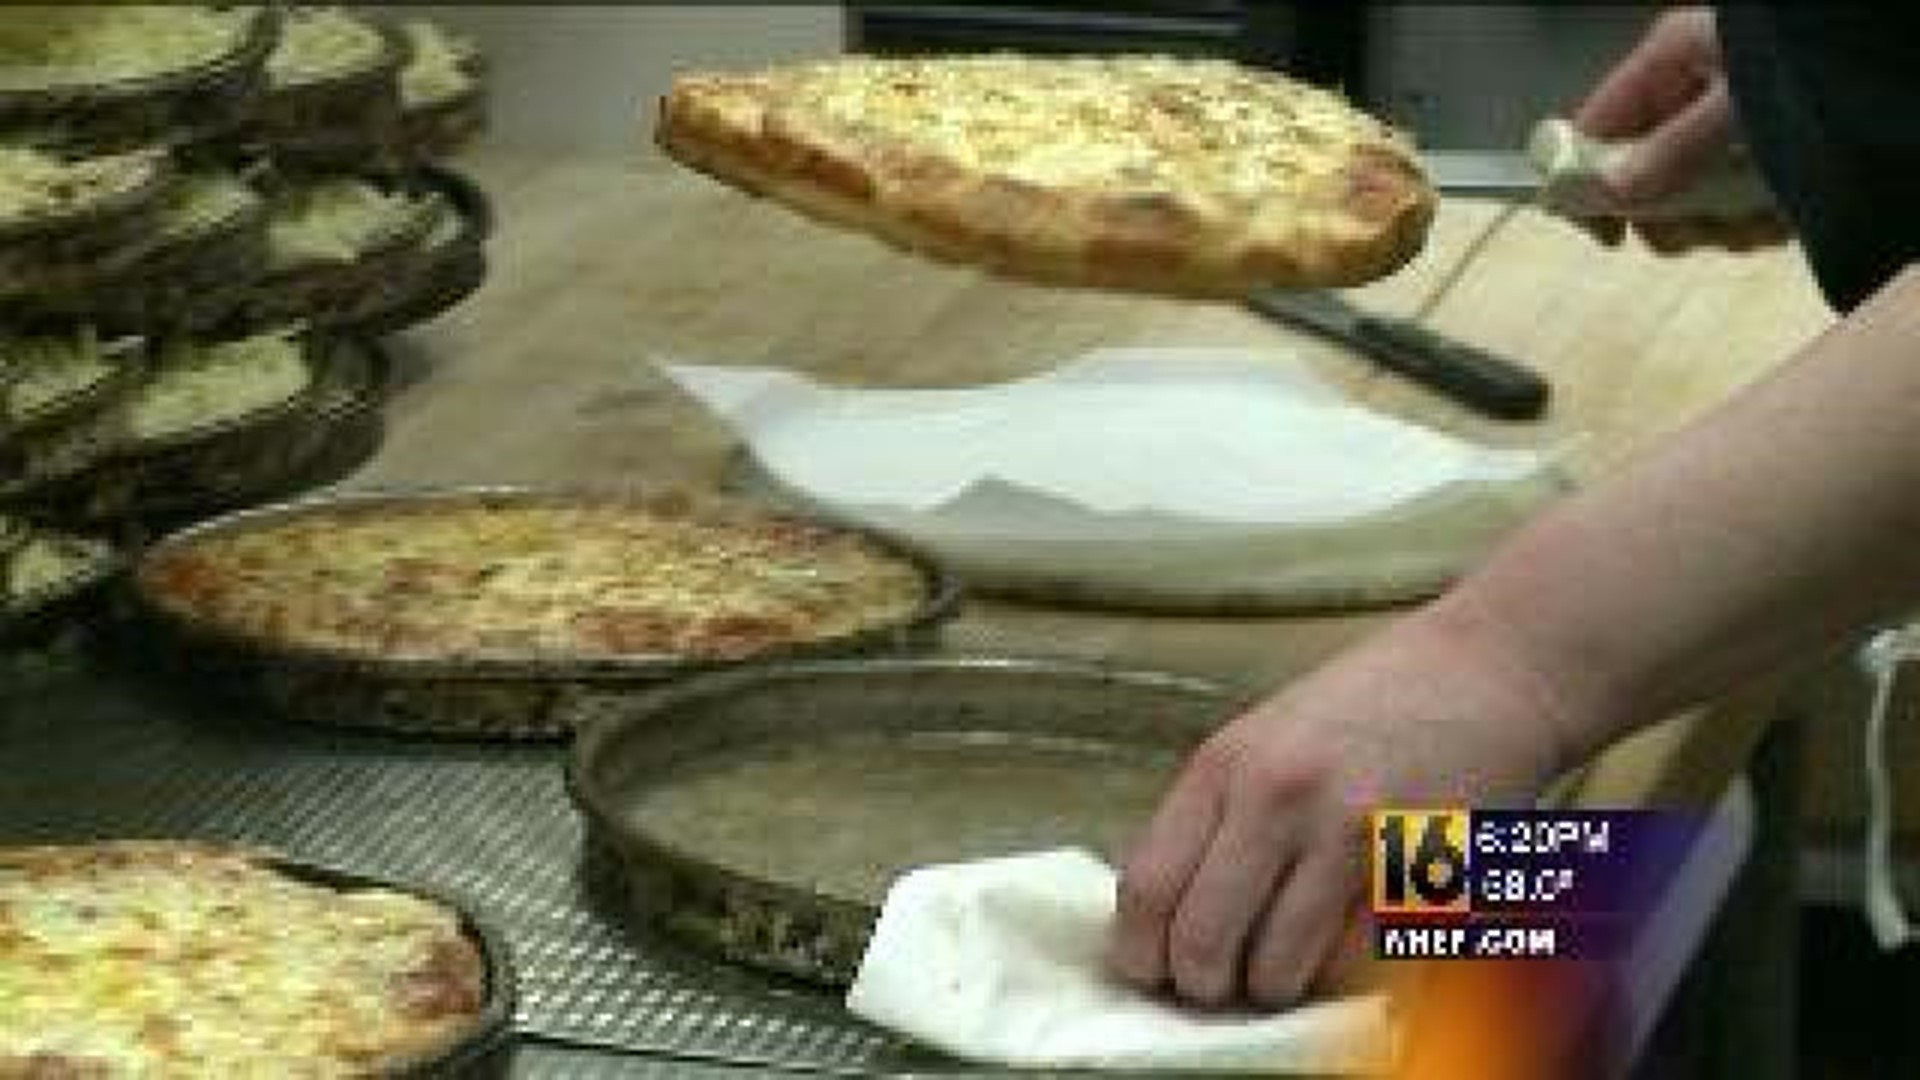 Pizza Place Raises Money for Autism Awareness